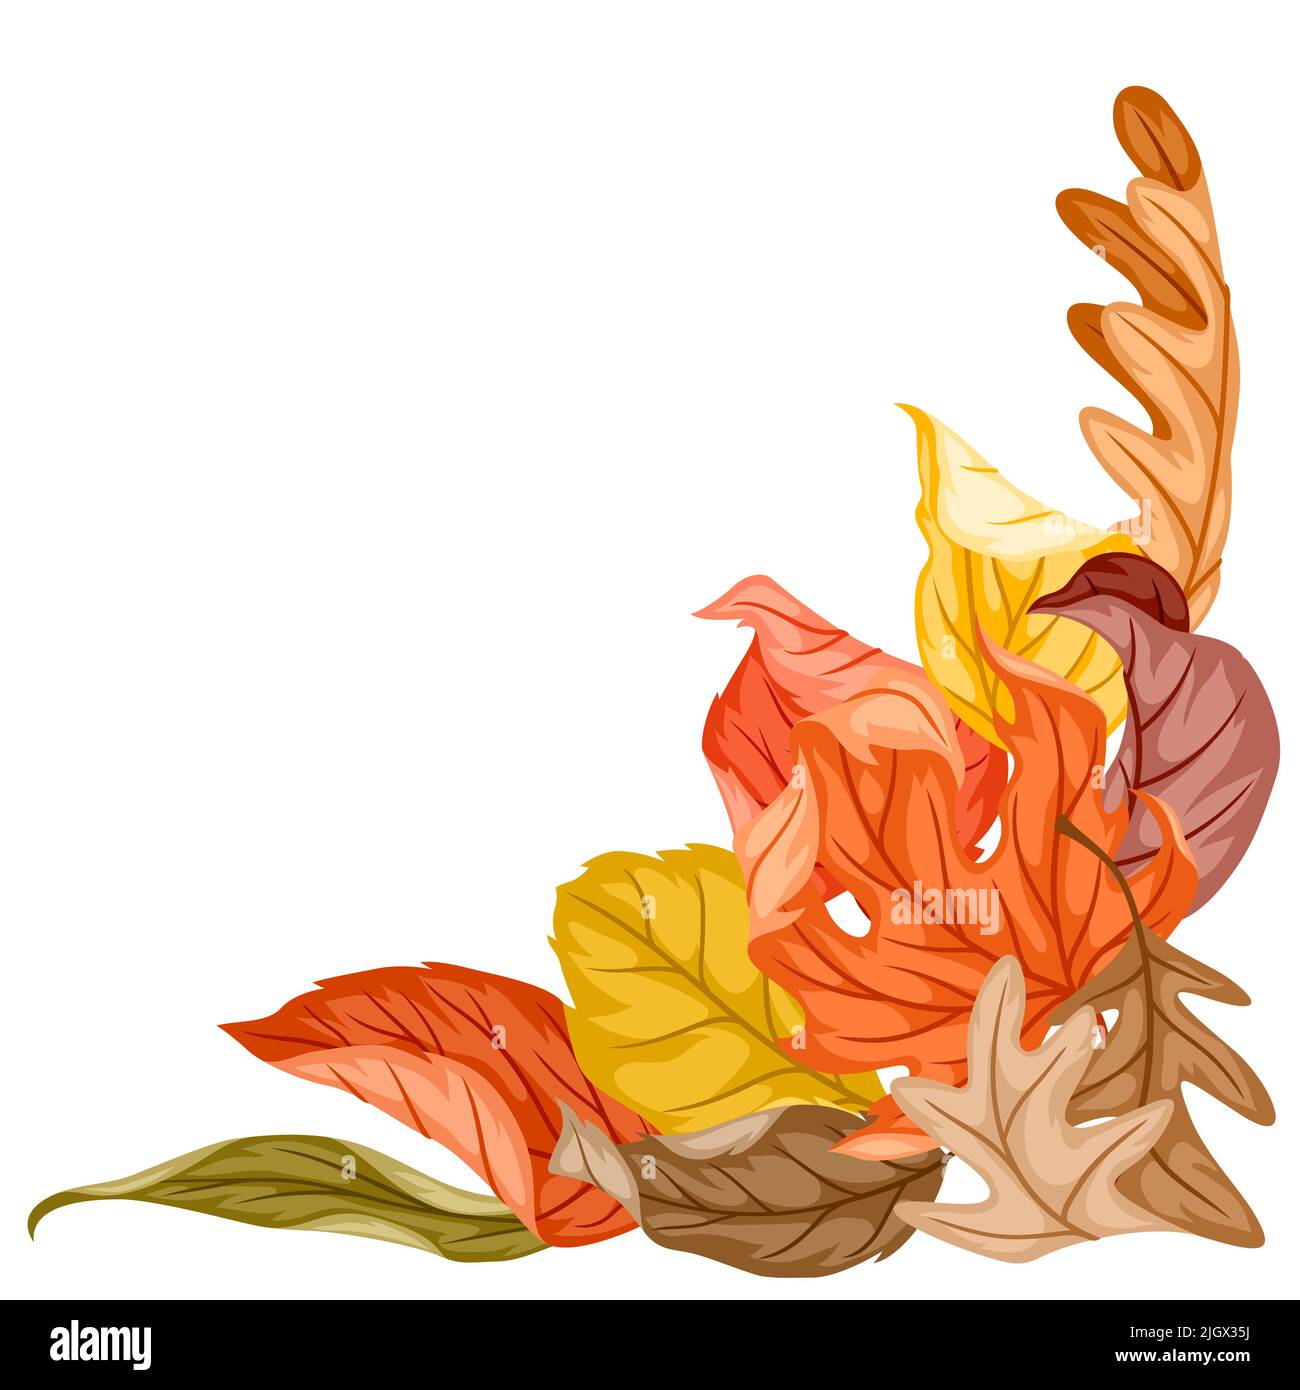 Dekoratives Element mit Herbstlaub. Abbildung der fallenden Blätter. Stock Vektor